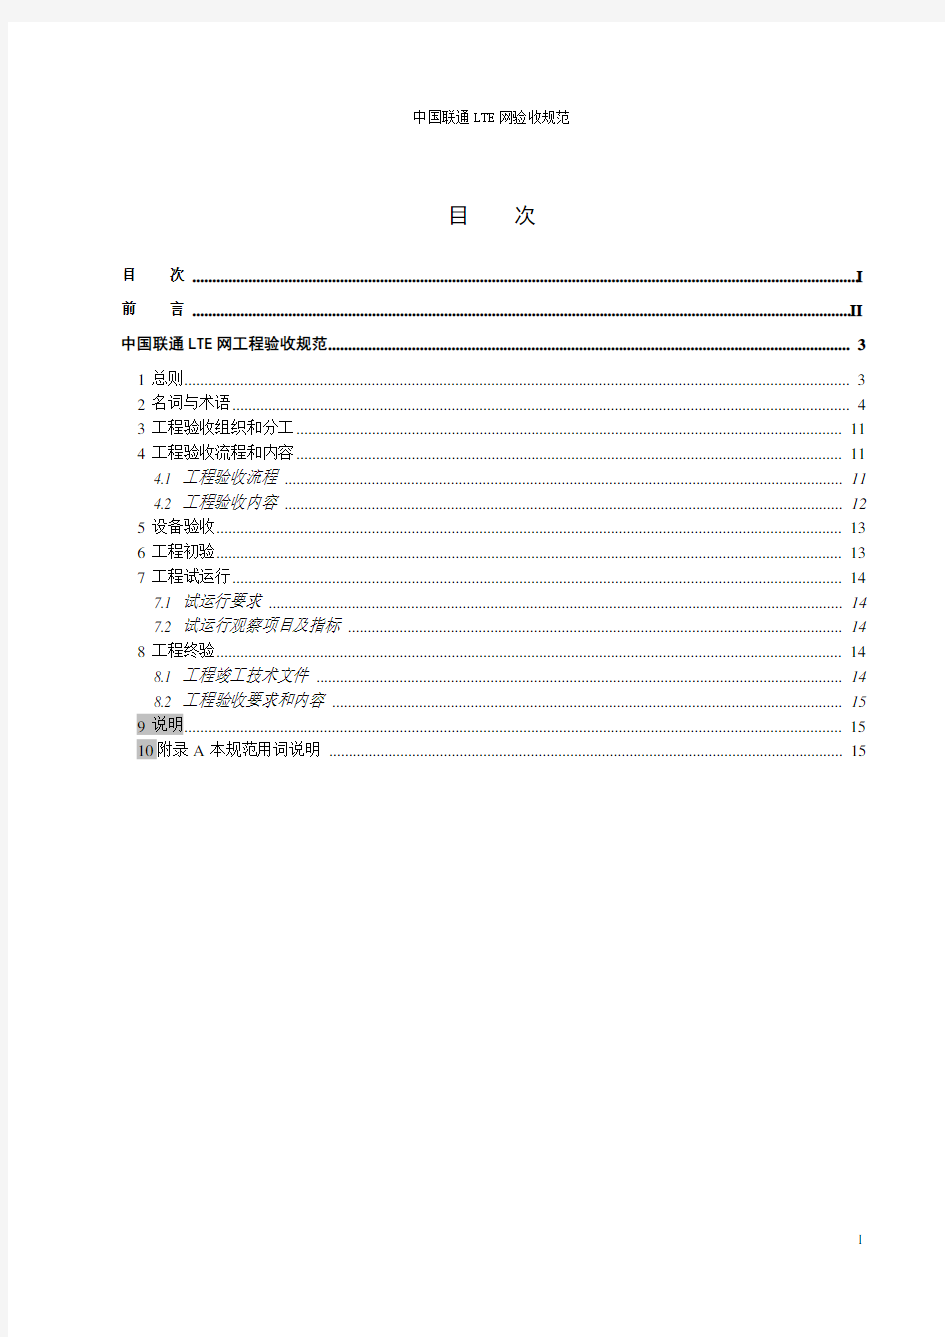 中国联通LTE网验收规范-总册V1.0